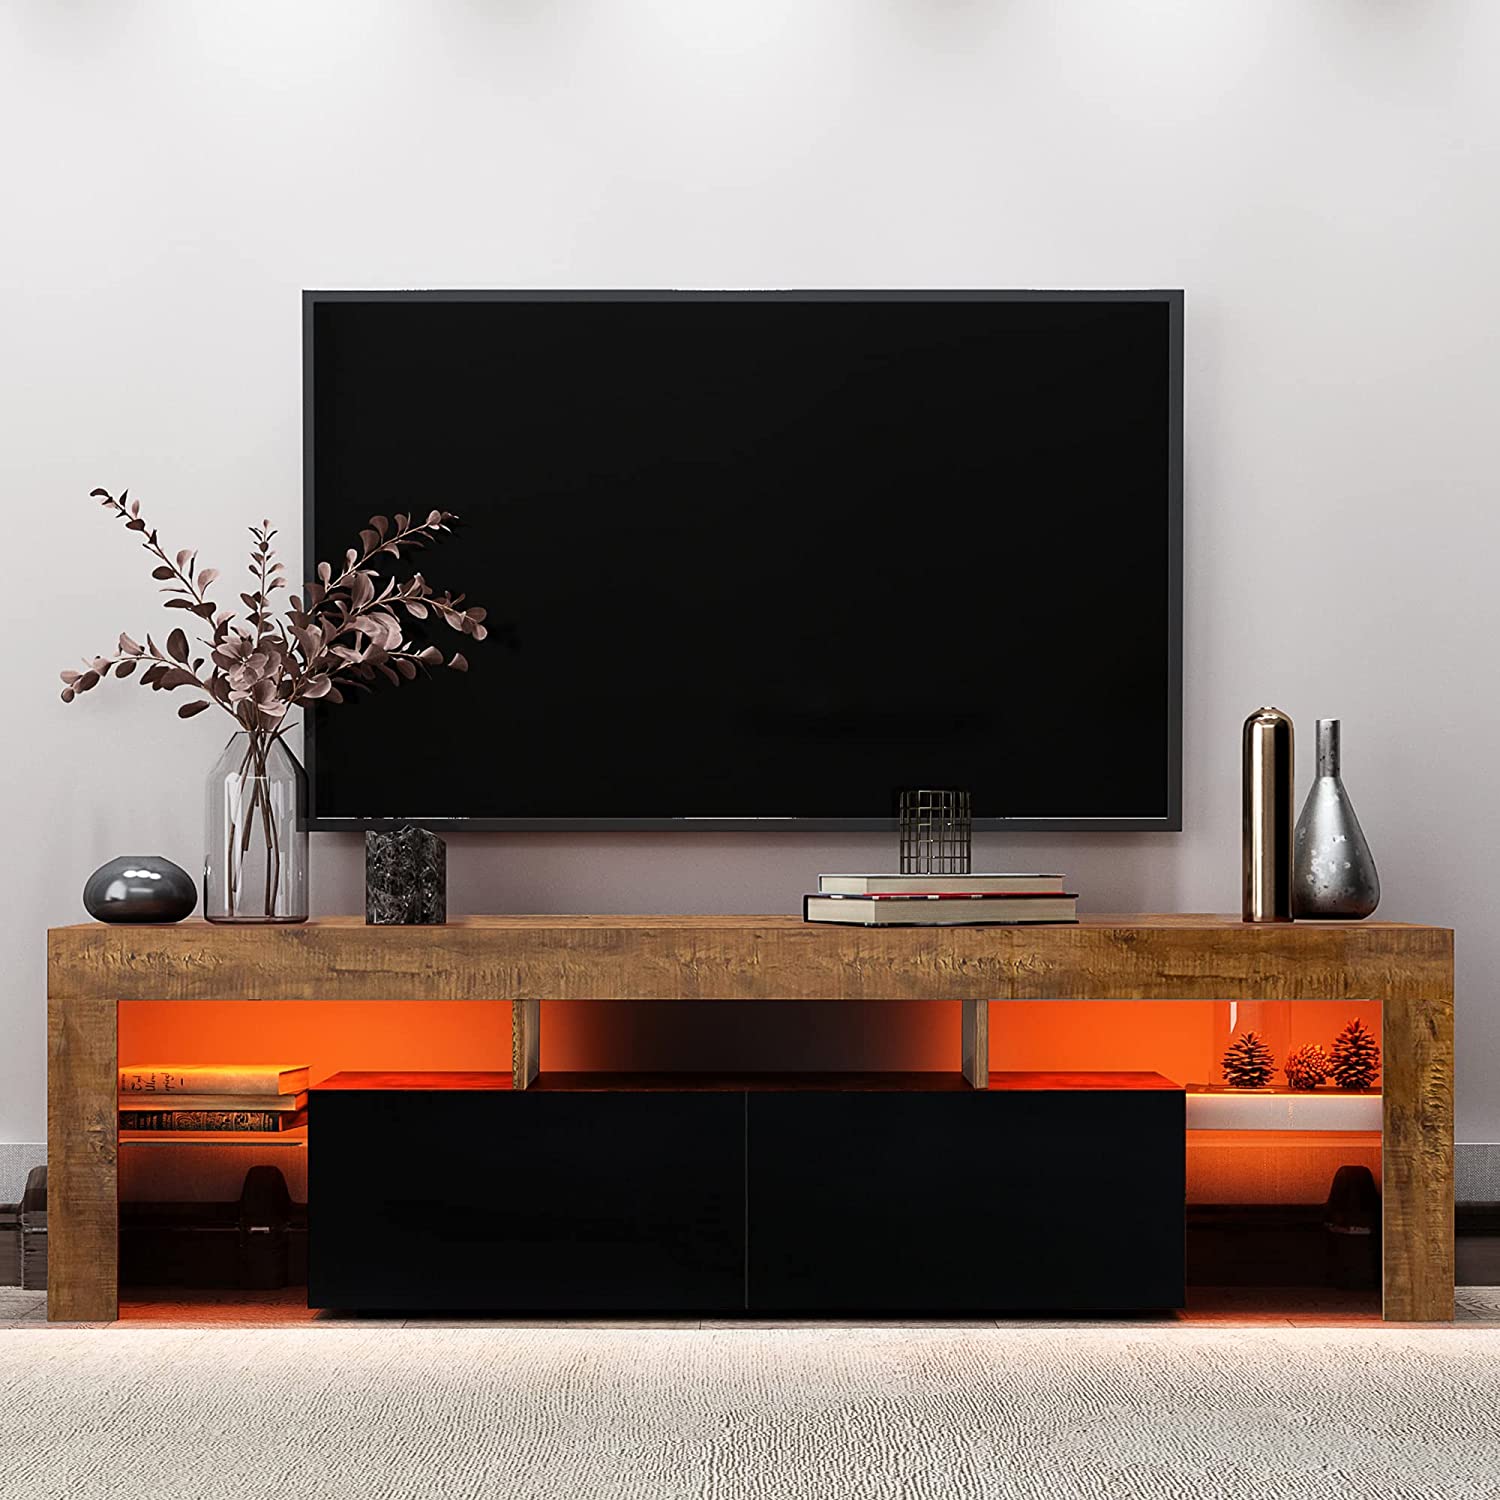 Soporte de TV LED, soportes de televisión de alto brillo, luces LED RGB, soporte de TV rústico de madera, mueble de TV para juegos para sala de estar y dormitorio